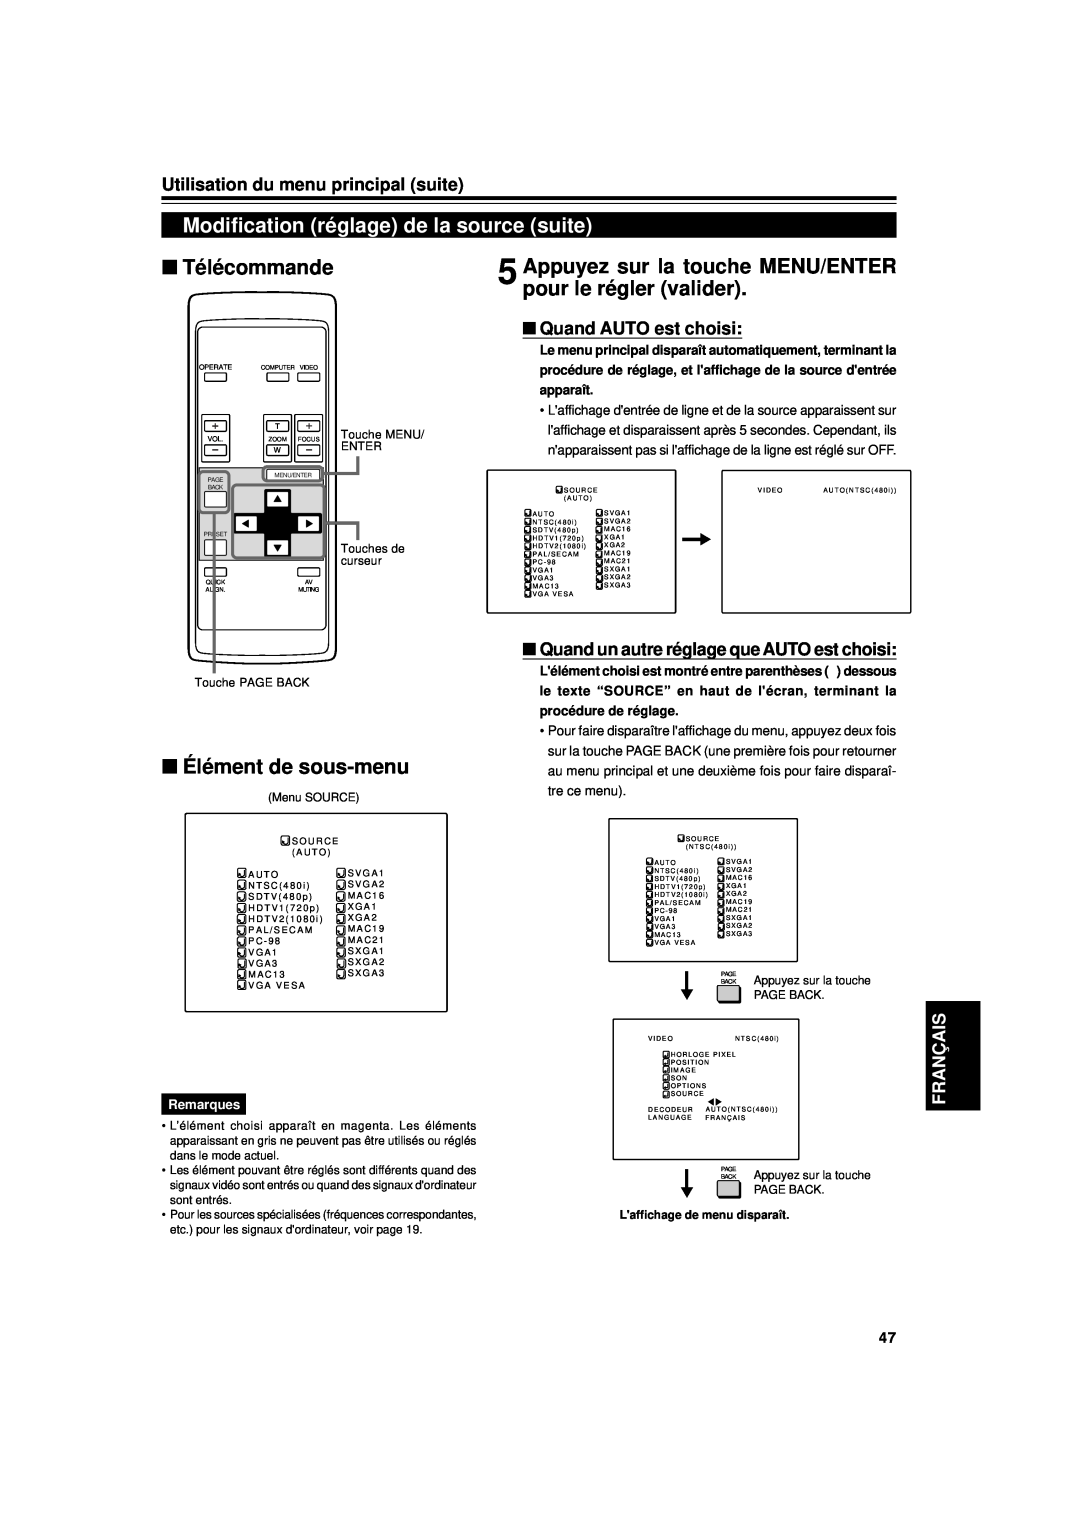 JVC DLA-G11U Modification réglage de la source suite, Appuyez sur la touche MENU/ENTER pour le régler valider, Français 